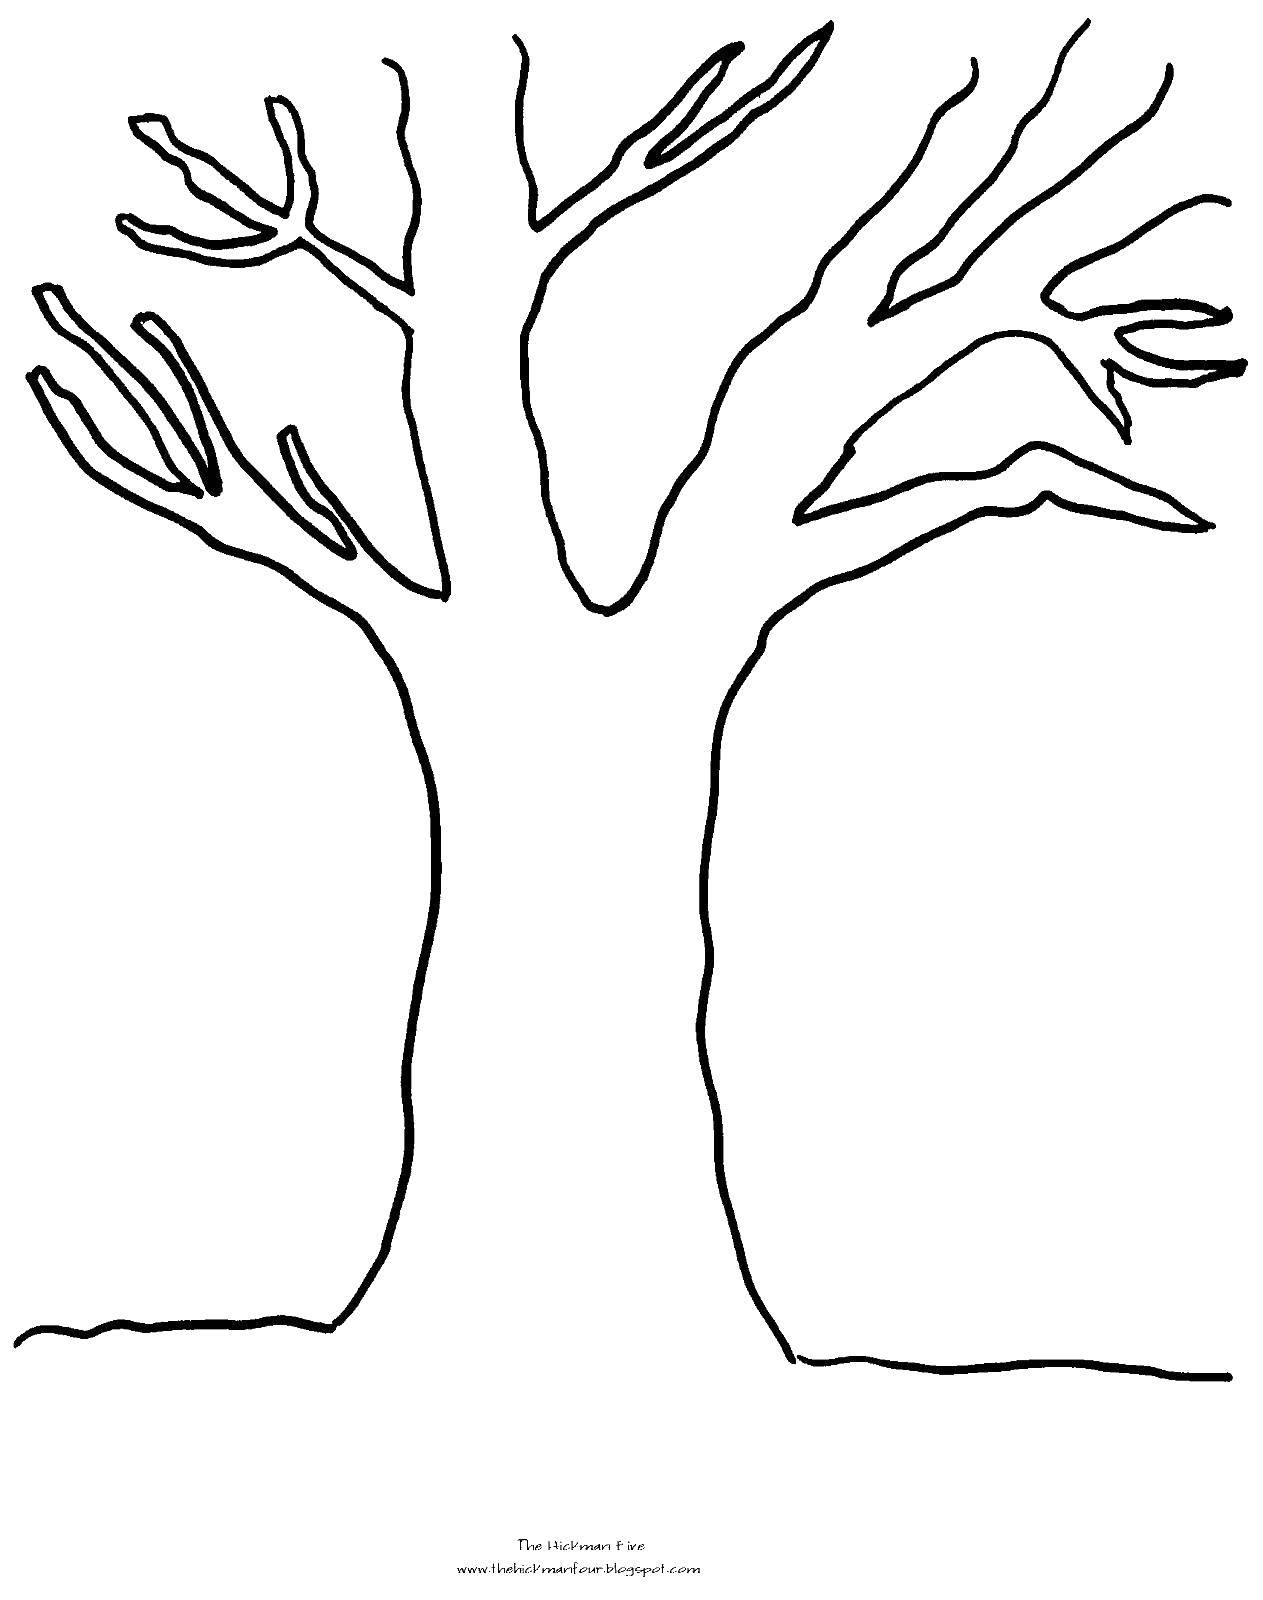 Контур дерева для раскрашивания (дерево, ветки)